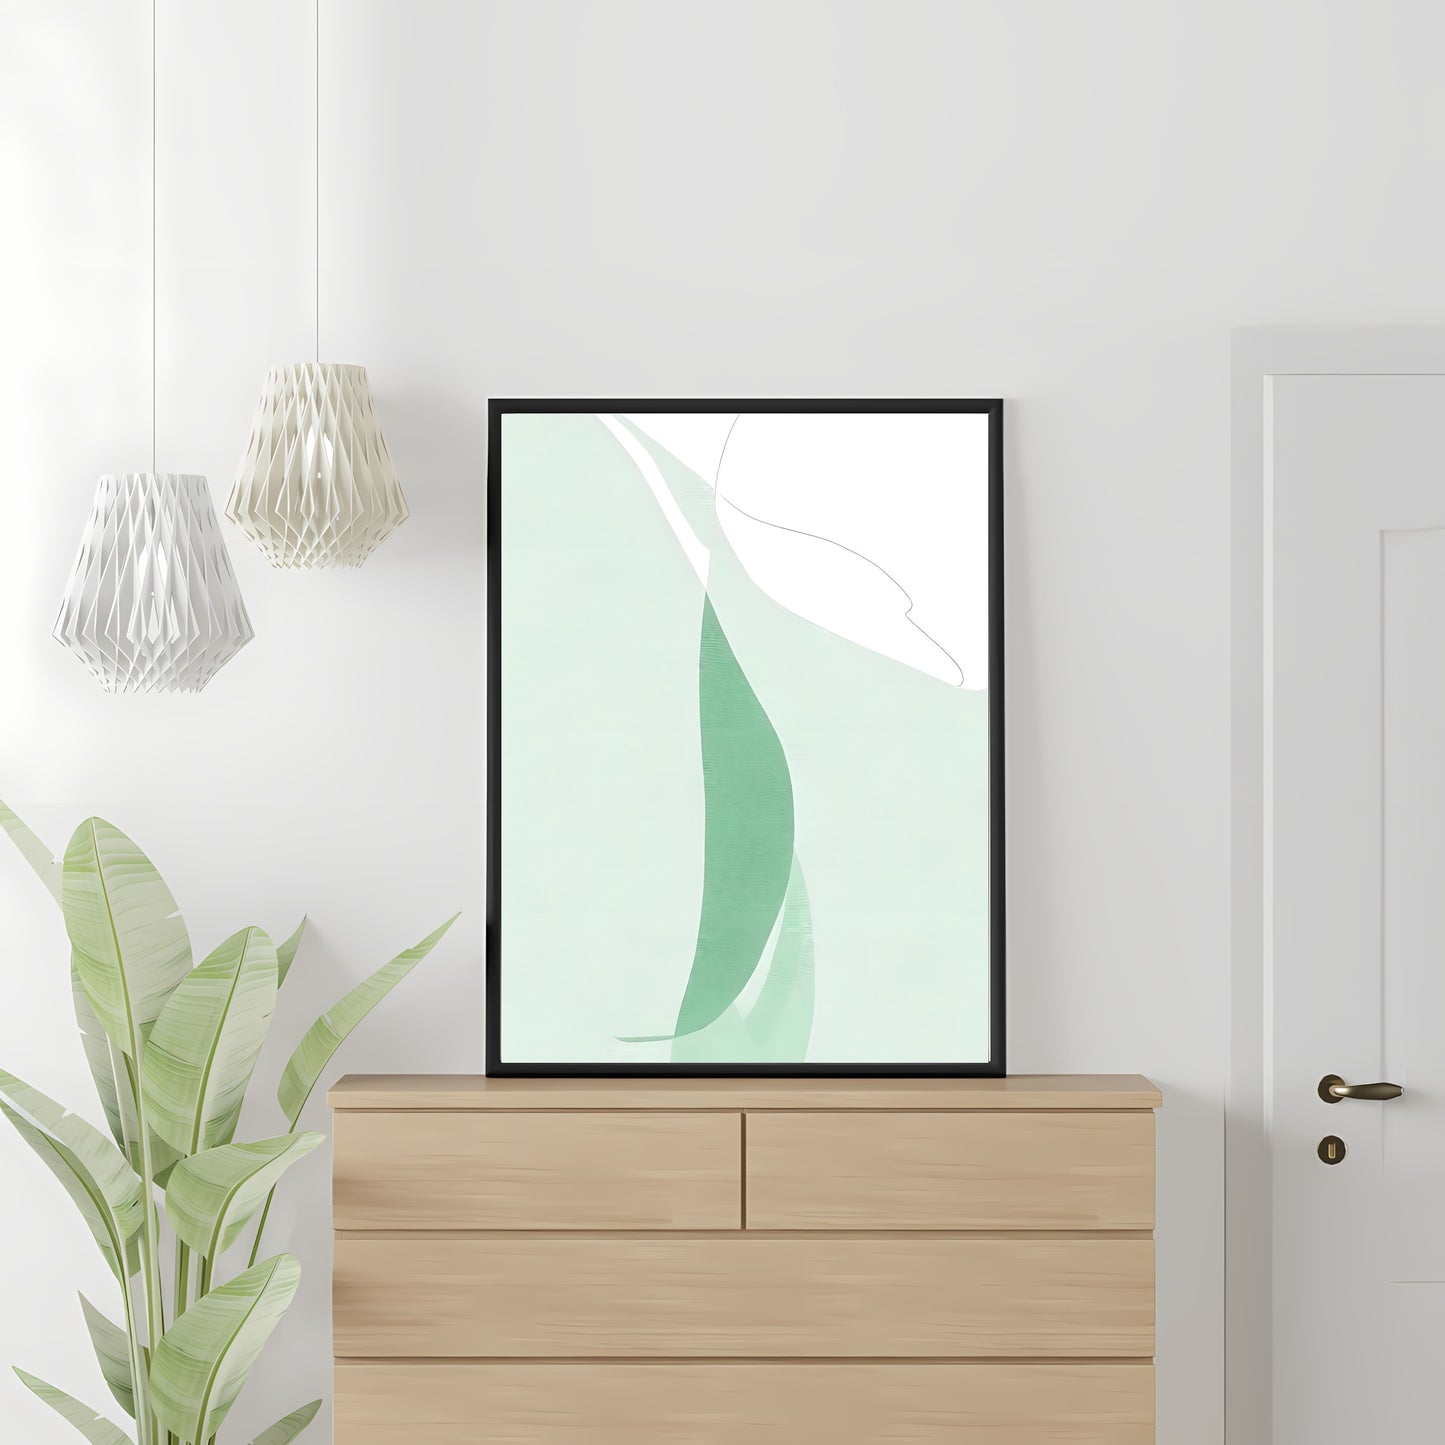 Abstrakte Wandkunst grün weiß moderner minimalistischer Kunstdruck Schlafzimmer Dekor neutrale Töne Papier Posterdruck